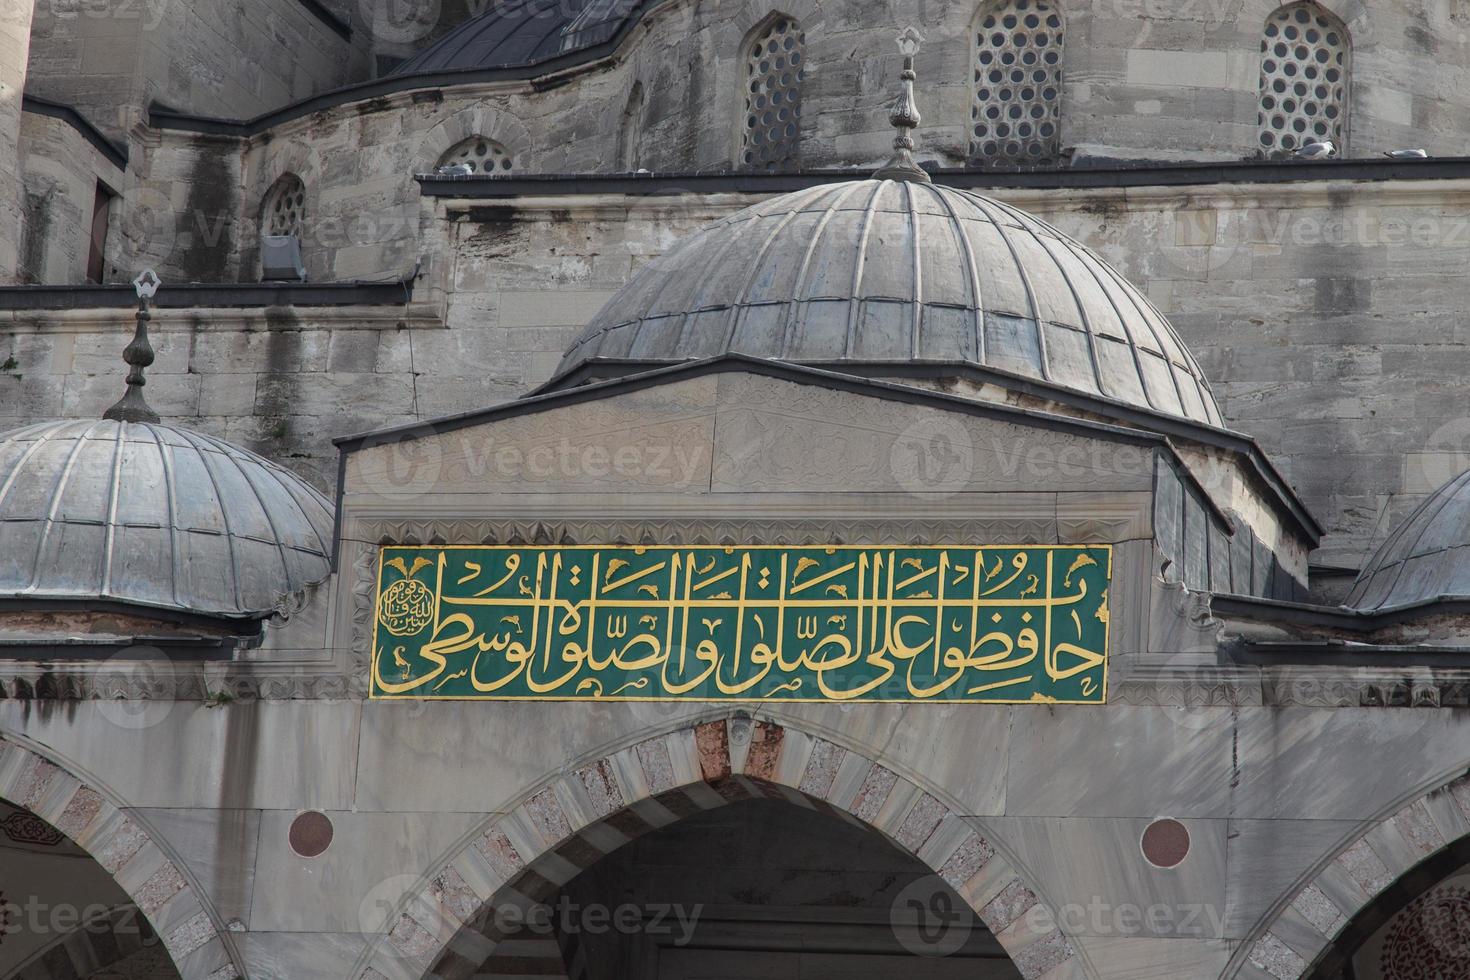 sultan ahmed blauwe moskee foto